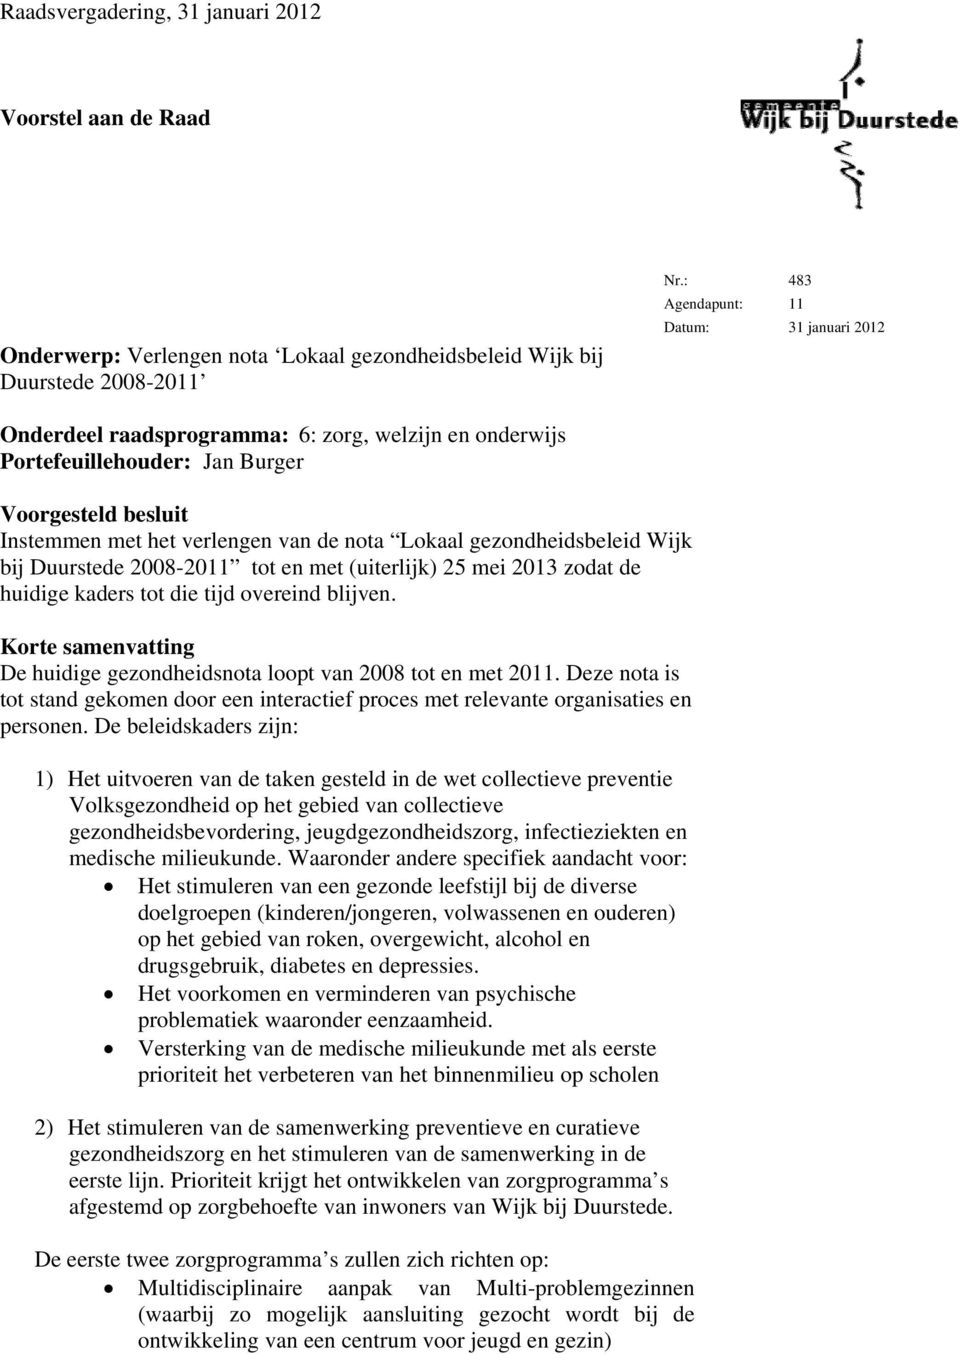 gezondheidsbeleid Wijk bij Duurstede 2008-2011 tot en met (uiterlijk) 25 mei 2013 zodat de huidige kaders tot die tijd overeind blijven.